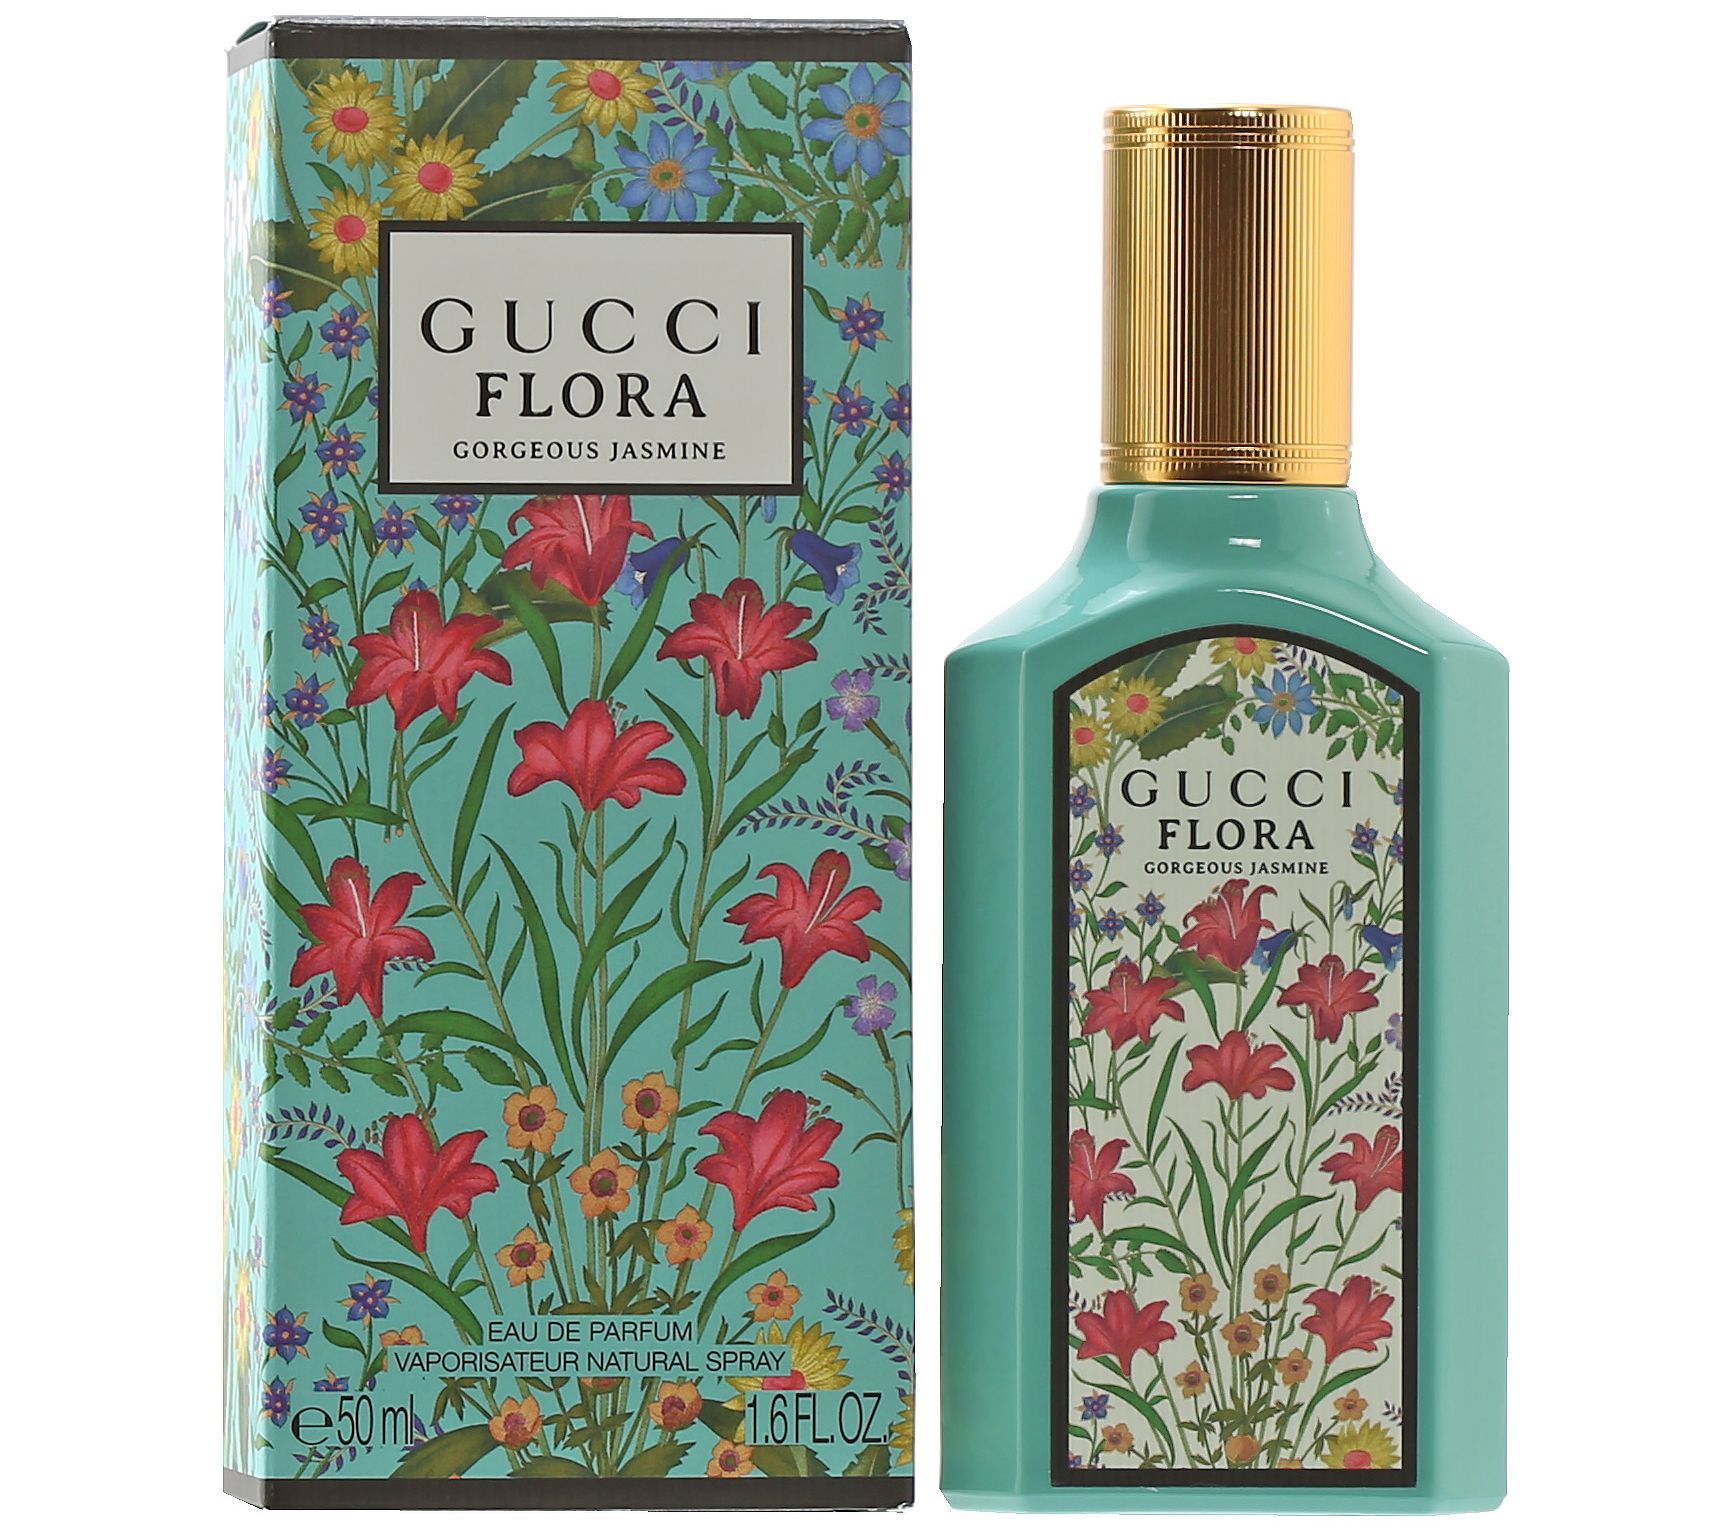 Gucci Guilty Love Edition by Gucci Eau De Parfum Spray 3 oz (Women), 1 -  Baker's